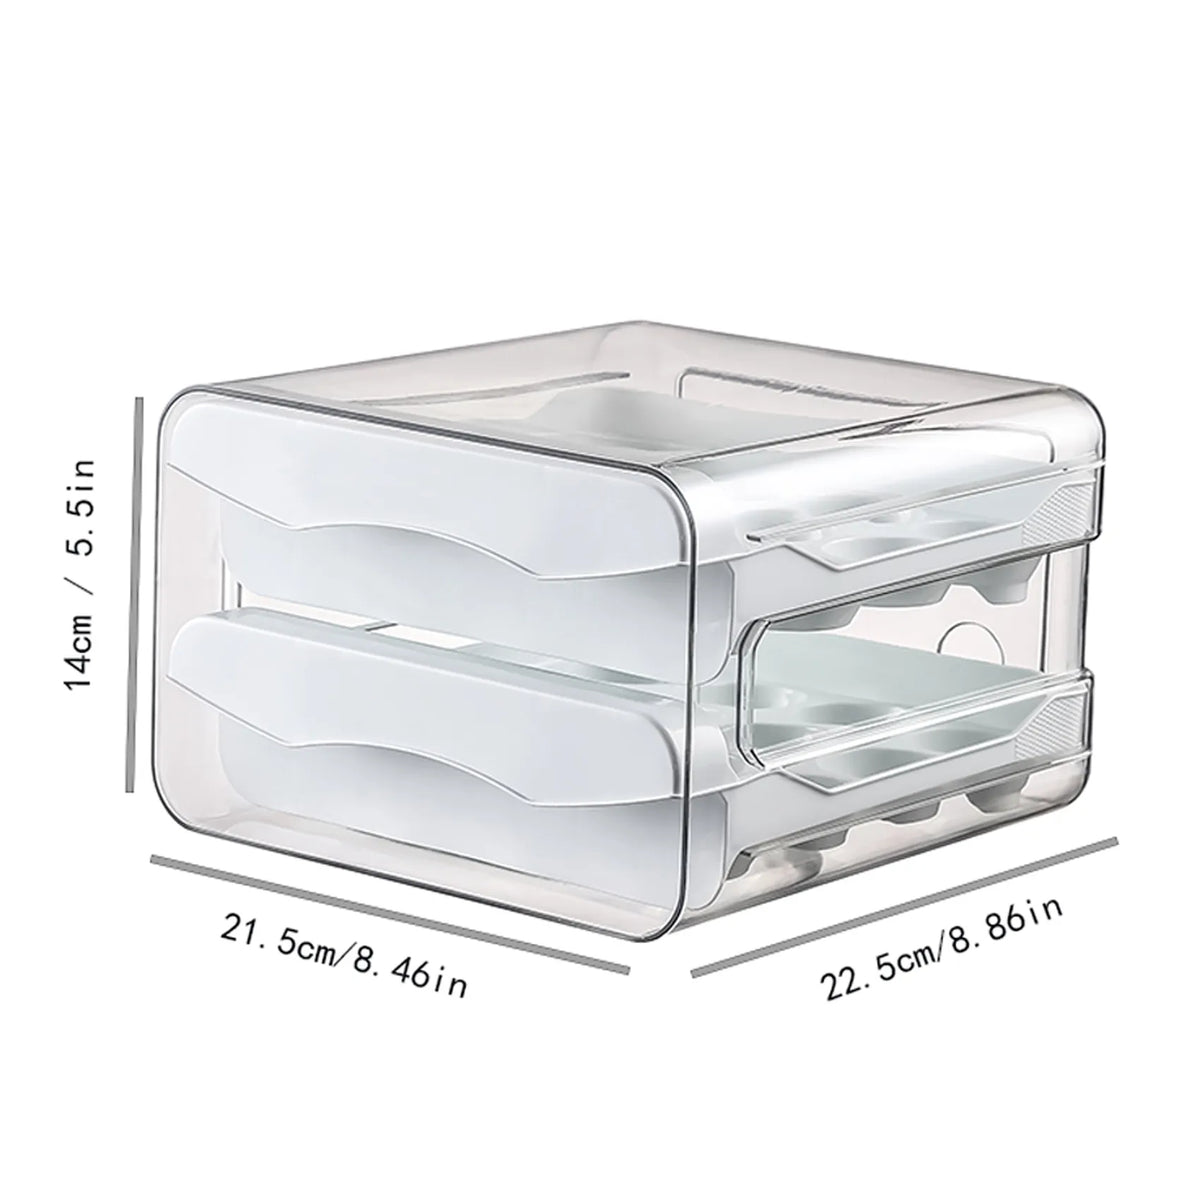 Armazenador de ovos Refrigerador Egg Storage, gaveta 2 camadas - BELANGAR